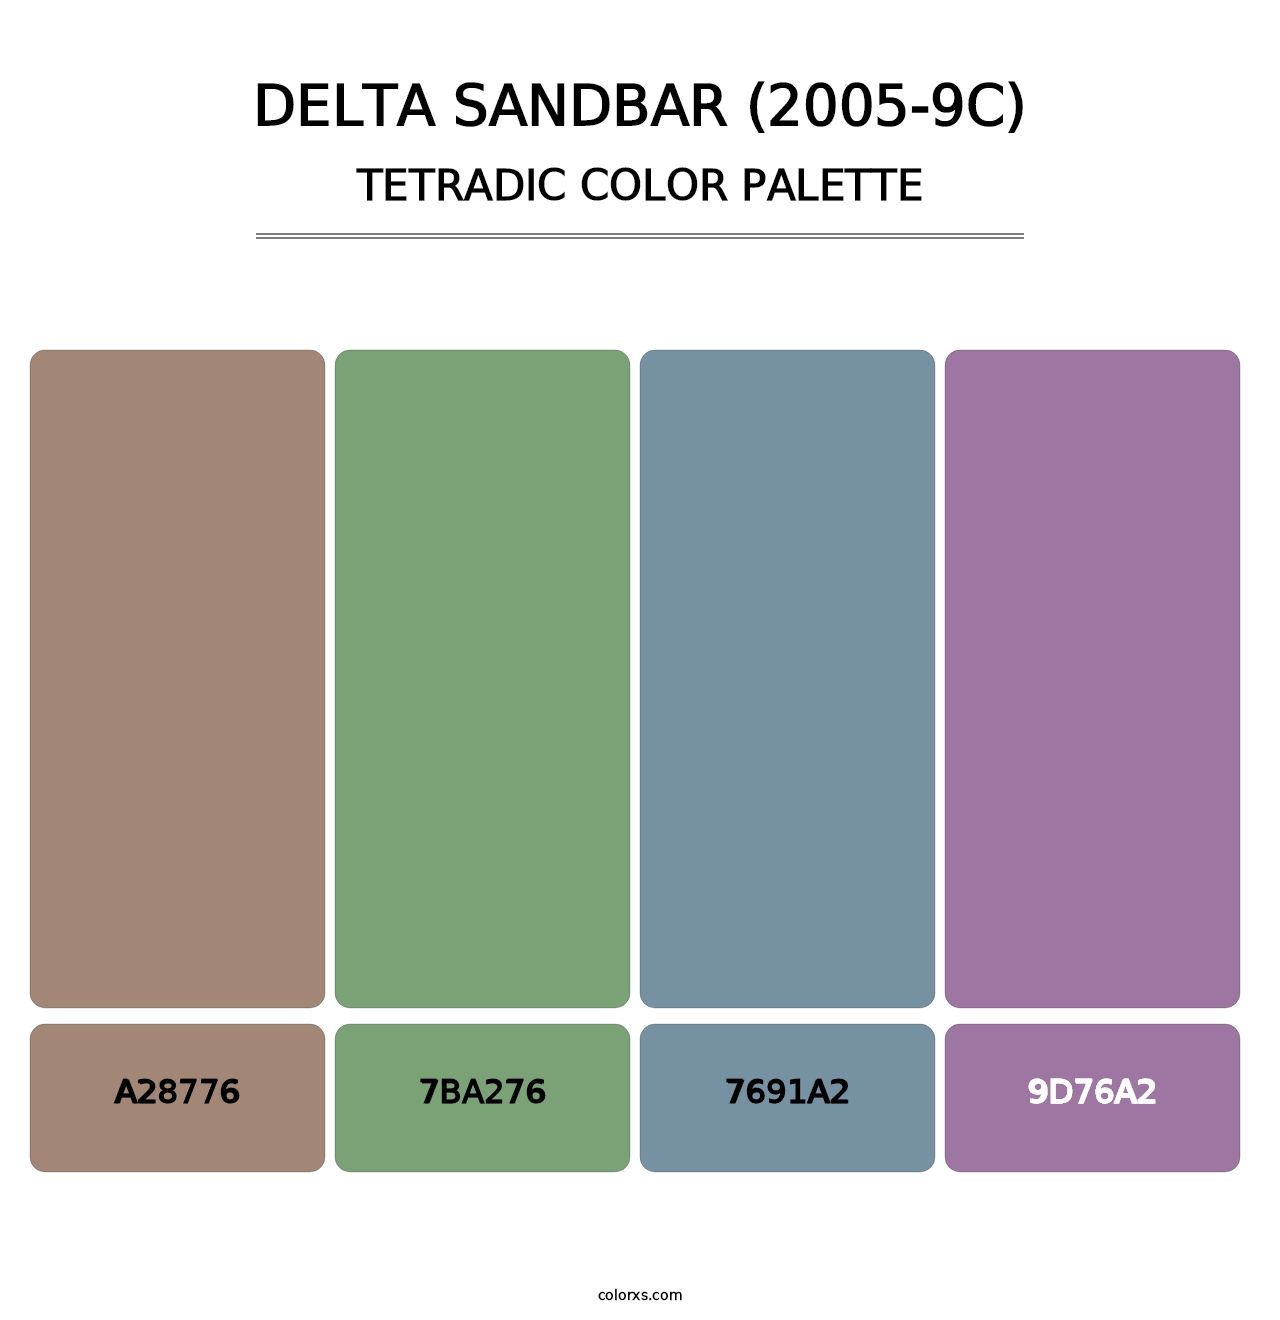 Delta Sandbar (2005-9C) - Tetradic Color Palette